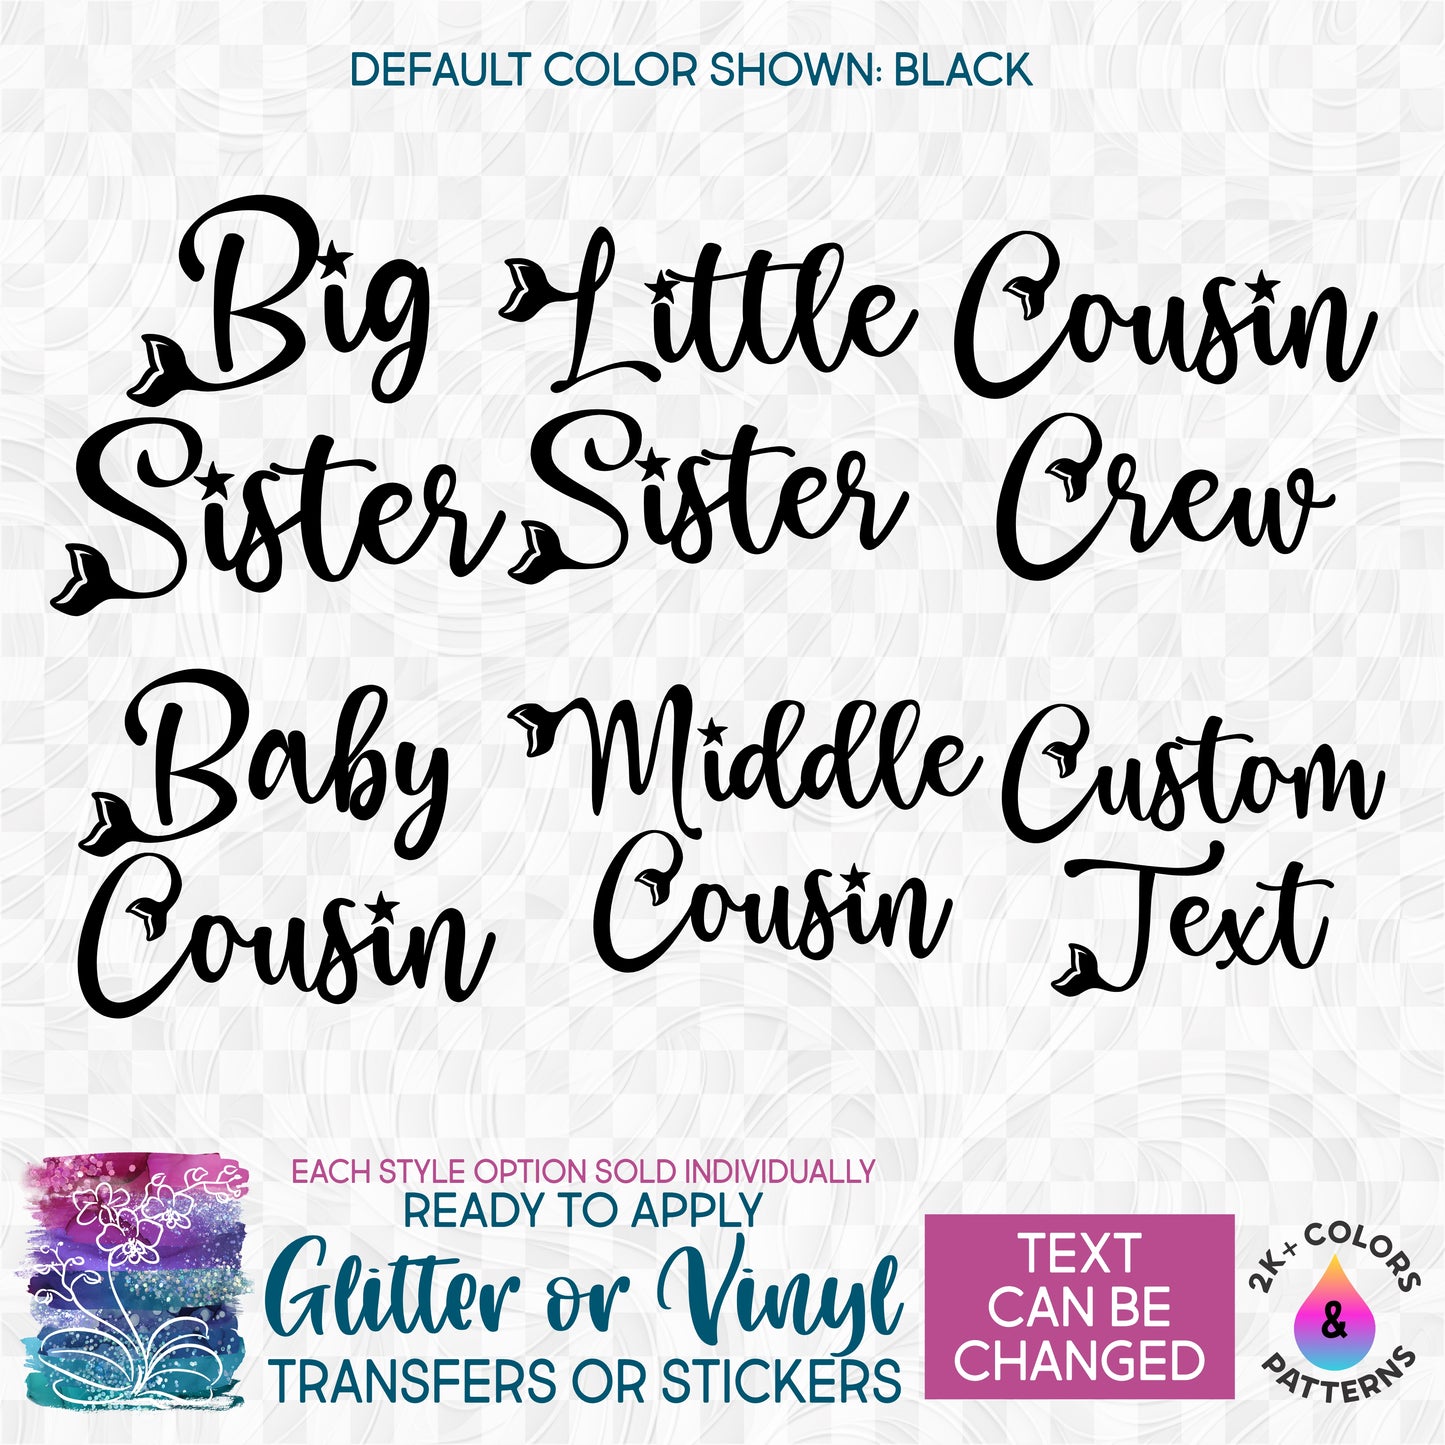 (s198-8E) Big, Sister, Little, Sister, Cousin Mermaid Custom Text Glitter or Vinyl Iron-On Transfer or Sticker